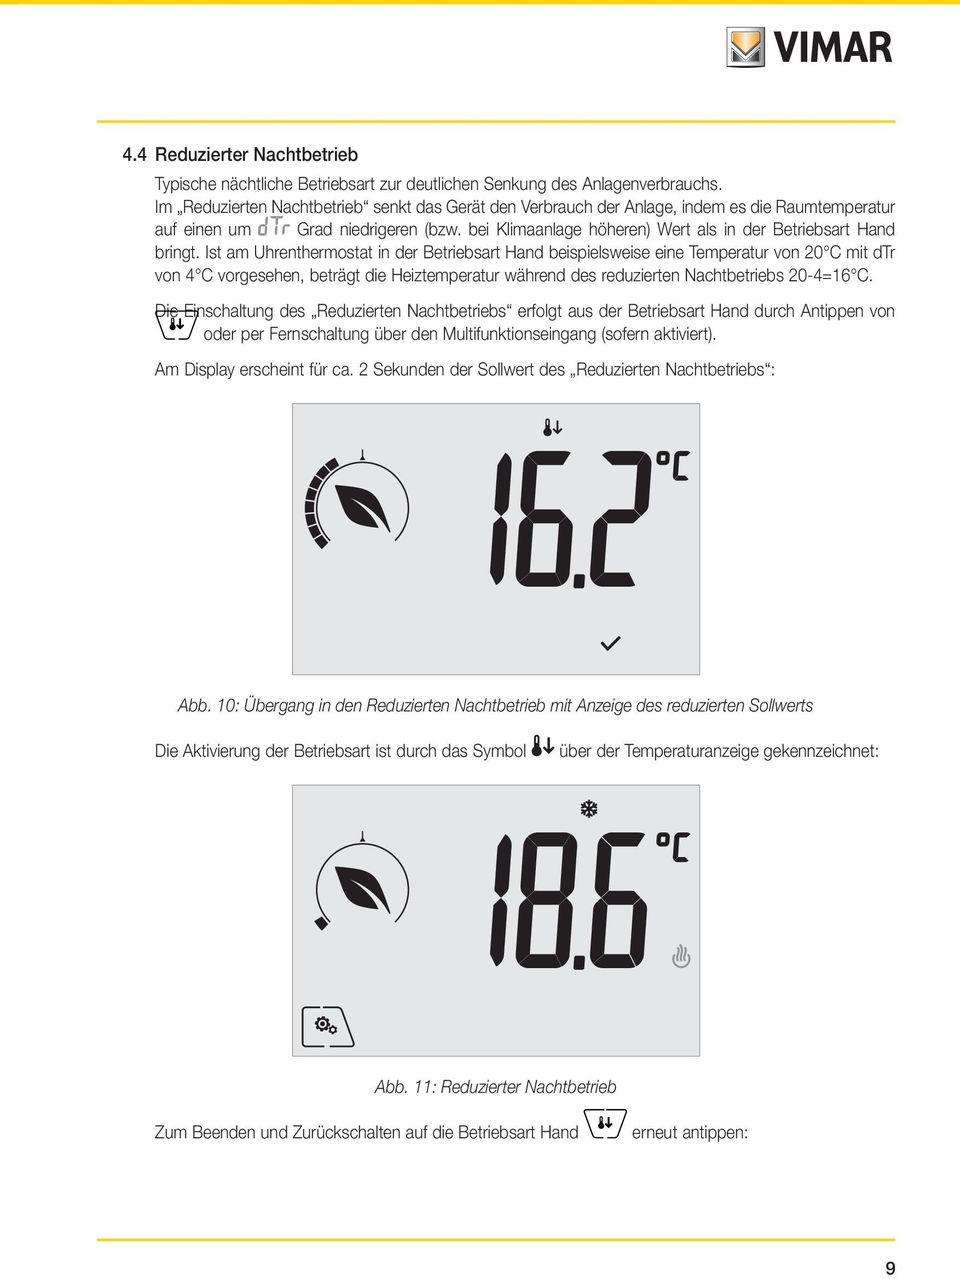 Ist am Uhrenthermostat in der Betriebsart Hand beispielsweise eine Temperatur von 20 C mit dtr von 4 C vorgesehen, beträgt die Heiztemperatur während des reduzierten Nachtbetriebs 20-4=16 C.